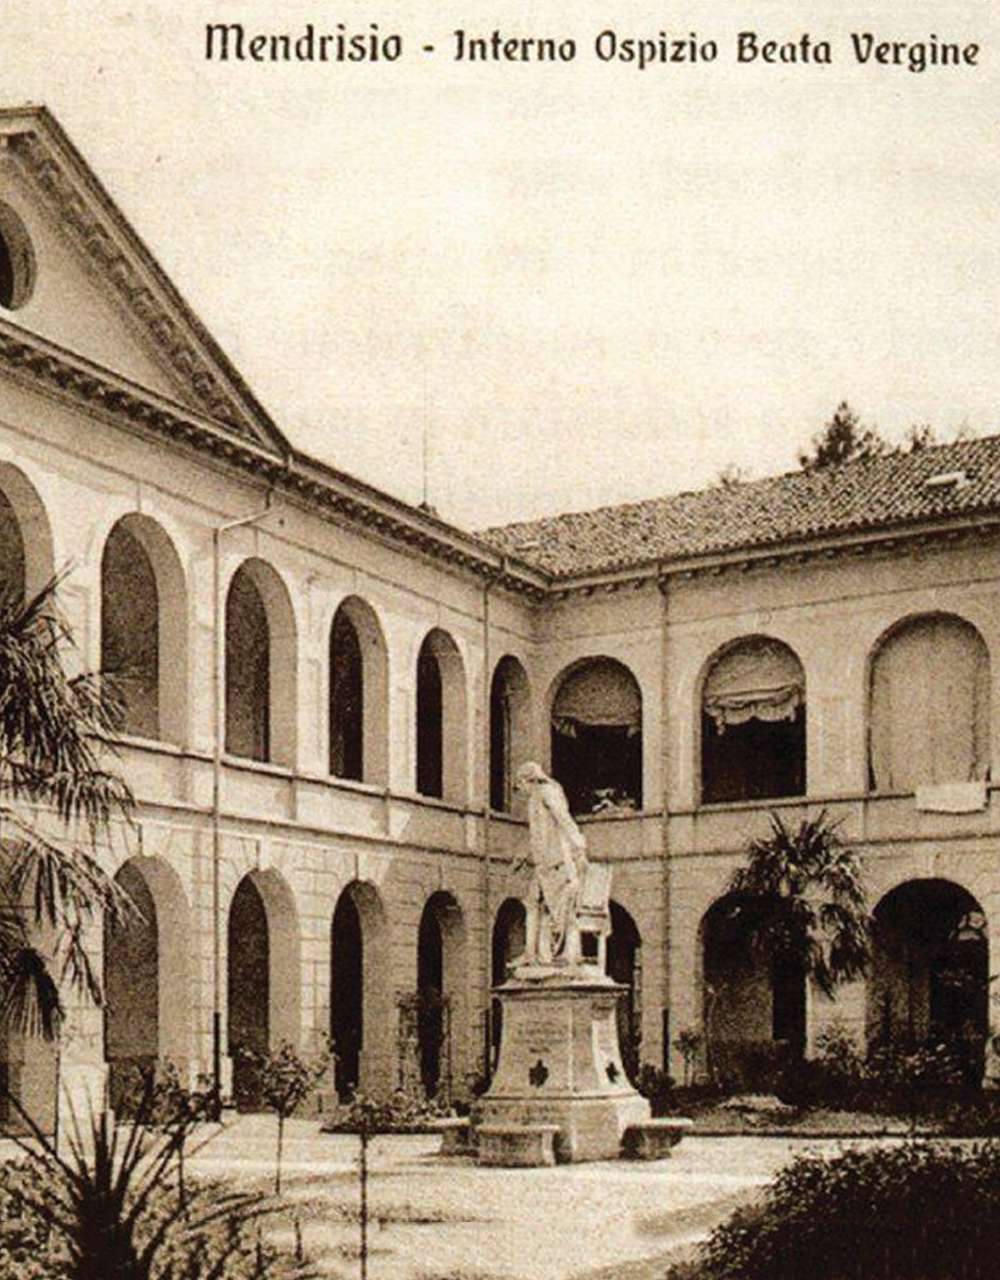 Palazzo Turconi